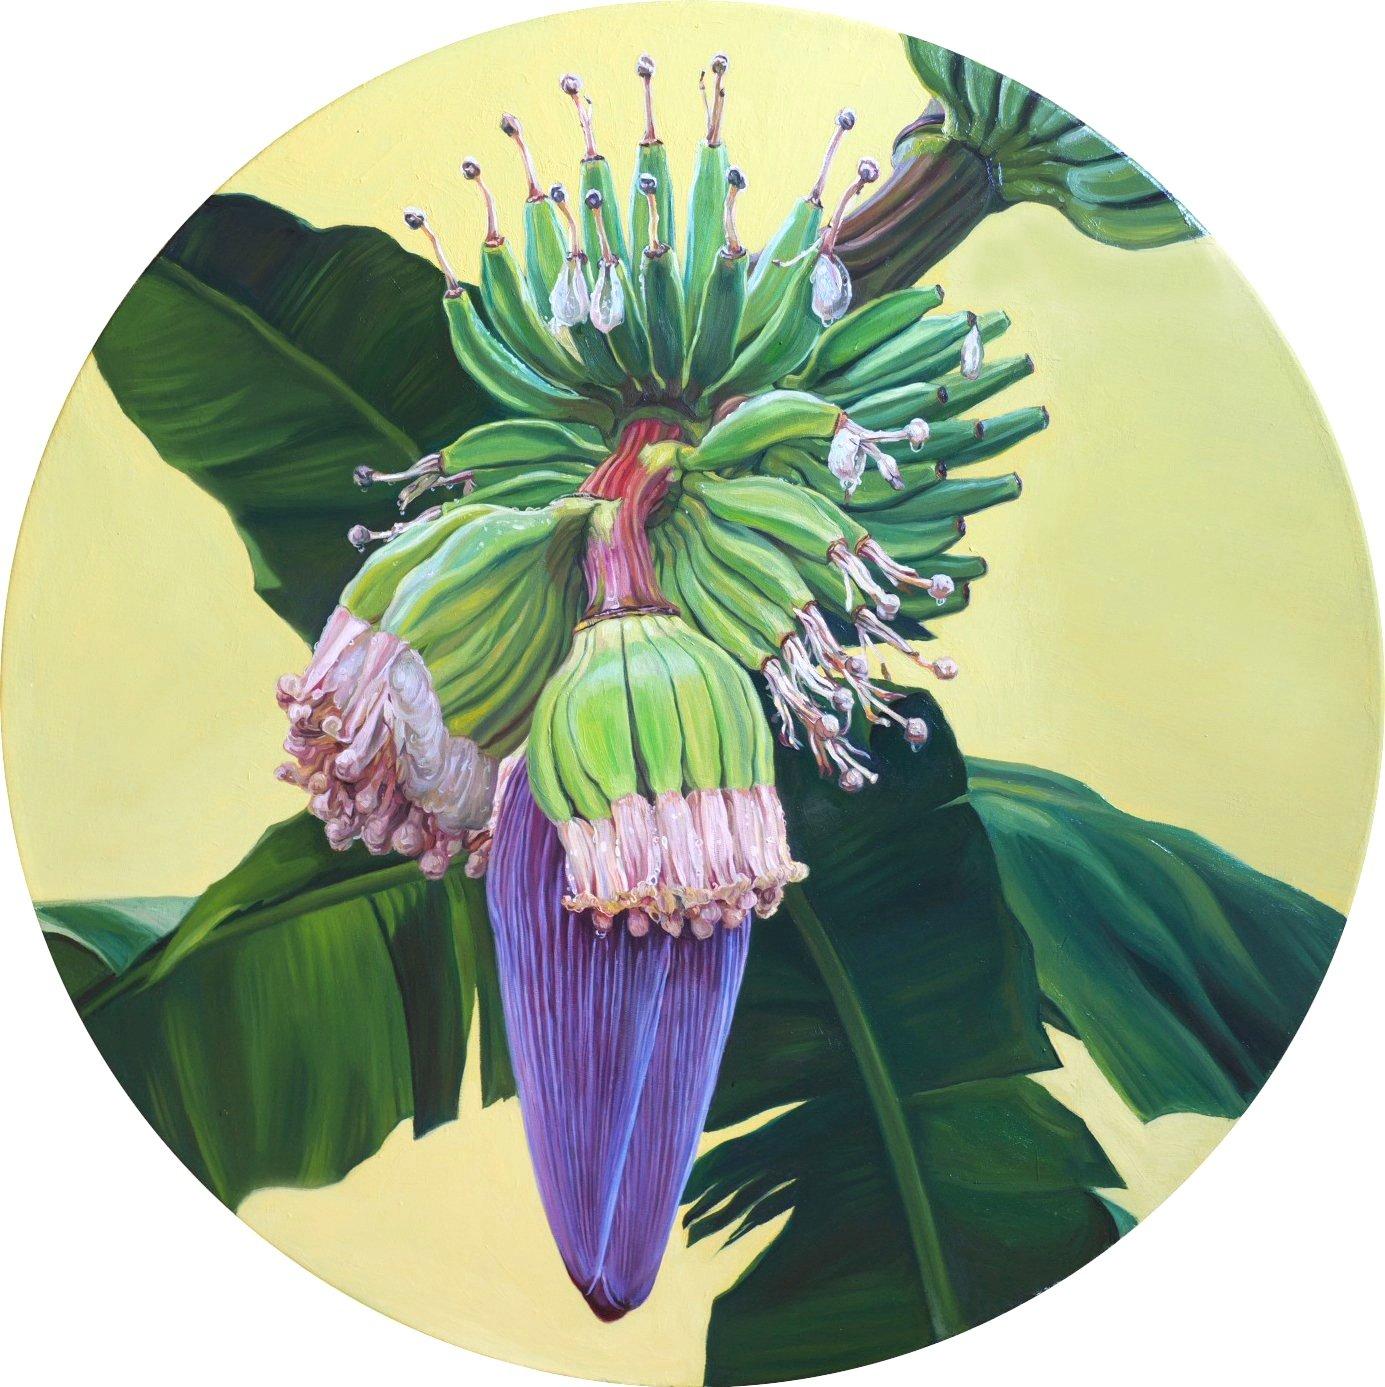 „Banana Flower“ Ölgemälde D 39“ Zoll von Sasha Sokolova

Bio 
Sasha Sokolova, die in Moskau in eine Künstlerfamilie hineingeboren wurde, ist eine preisgekrönte zeitgenössische realistische Malerin, die mit einer Reihe von traditionellen Öl- und